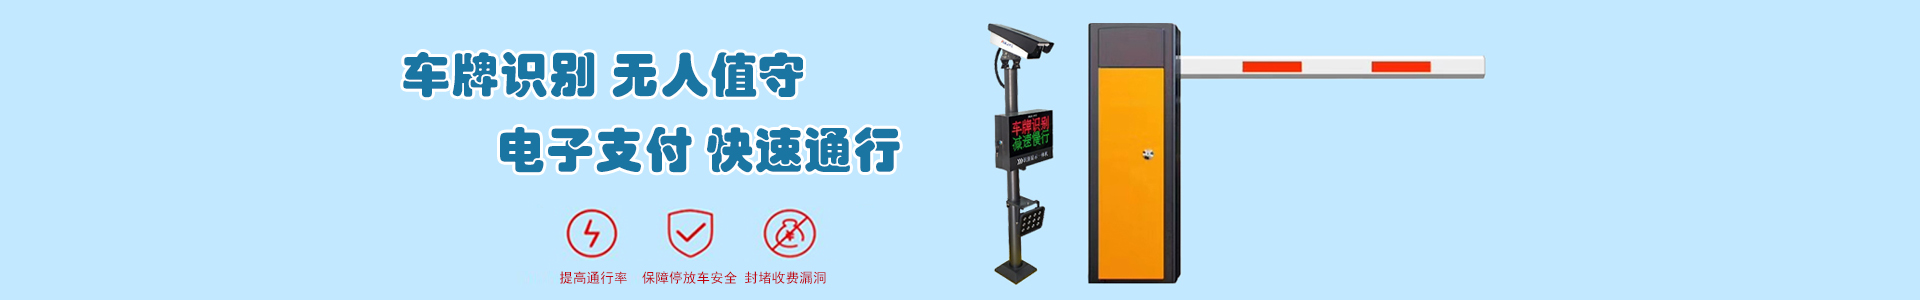 上海电信长江西路1828号-成功案例-上海帆蓝智能科技有限公司-车辆车牌识别|监控摄像头|道闸|小区门禁|人脸识别|伸缩门|